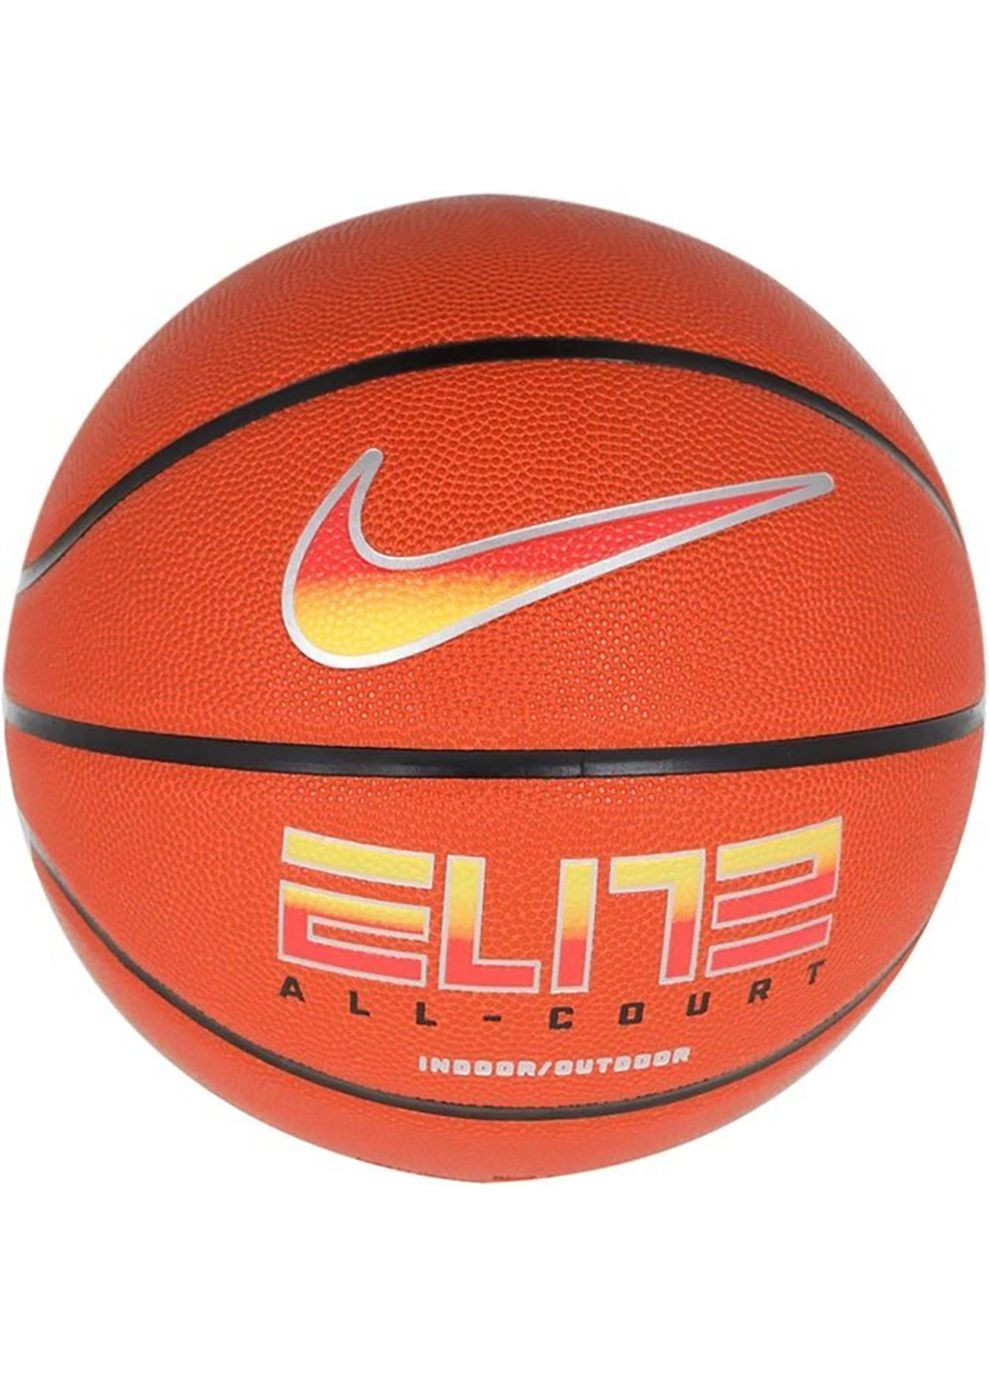 М'яч баскетбольний ELITE ALL COURT 8P 2.0 DEFLATED помаранчевий Уні 7 Nike (268747453)